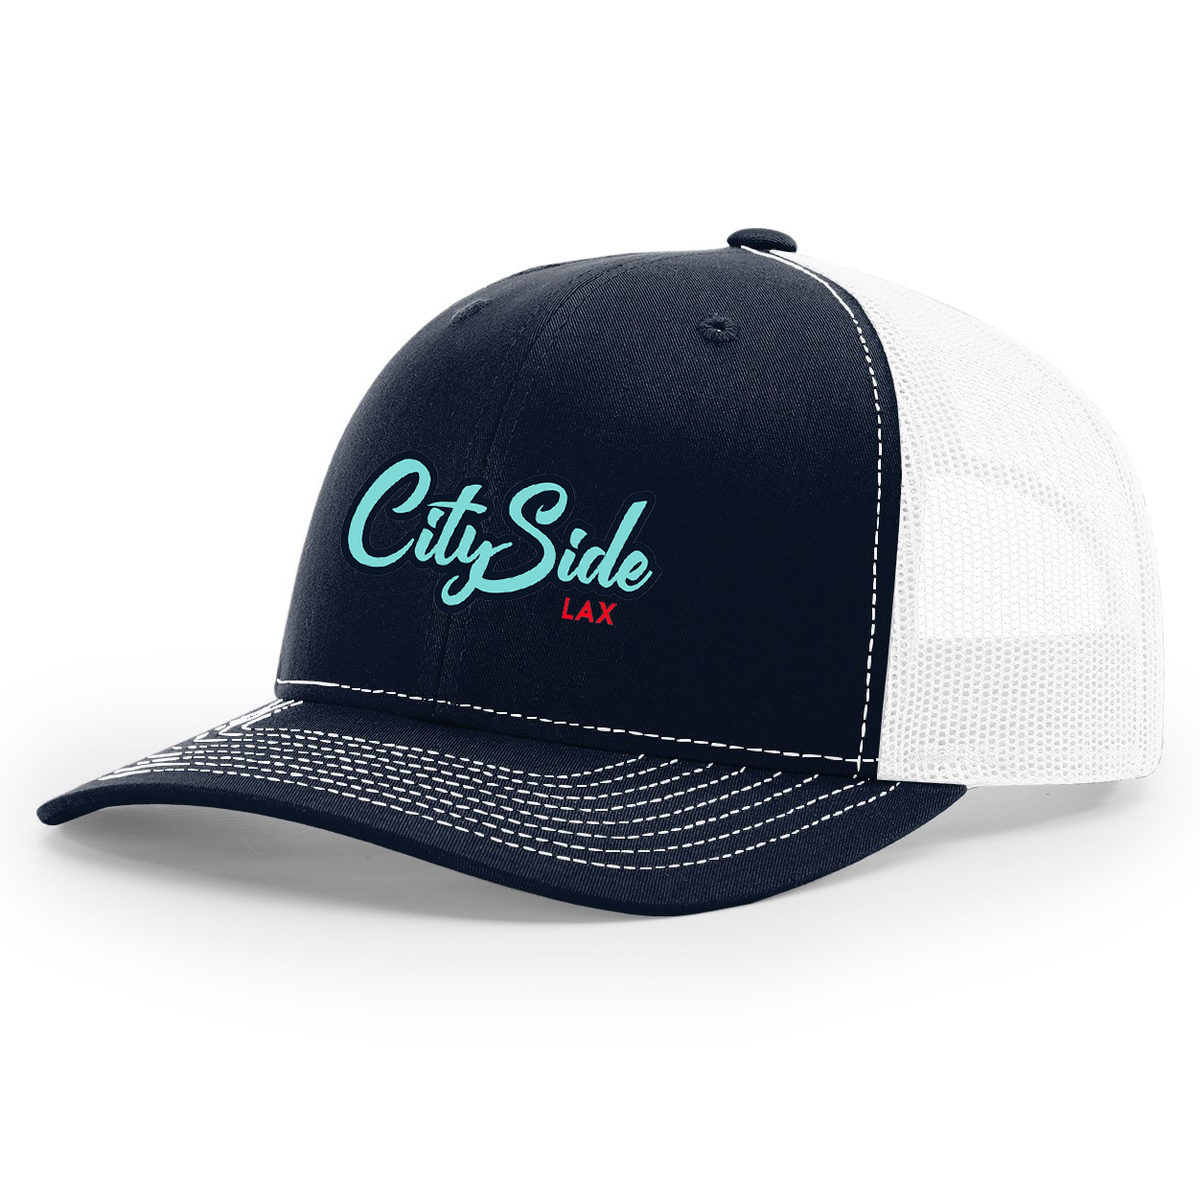 CitySide Lacrosse Snapback Trucker Cap